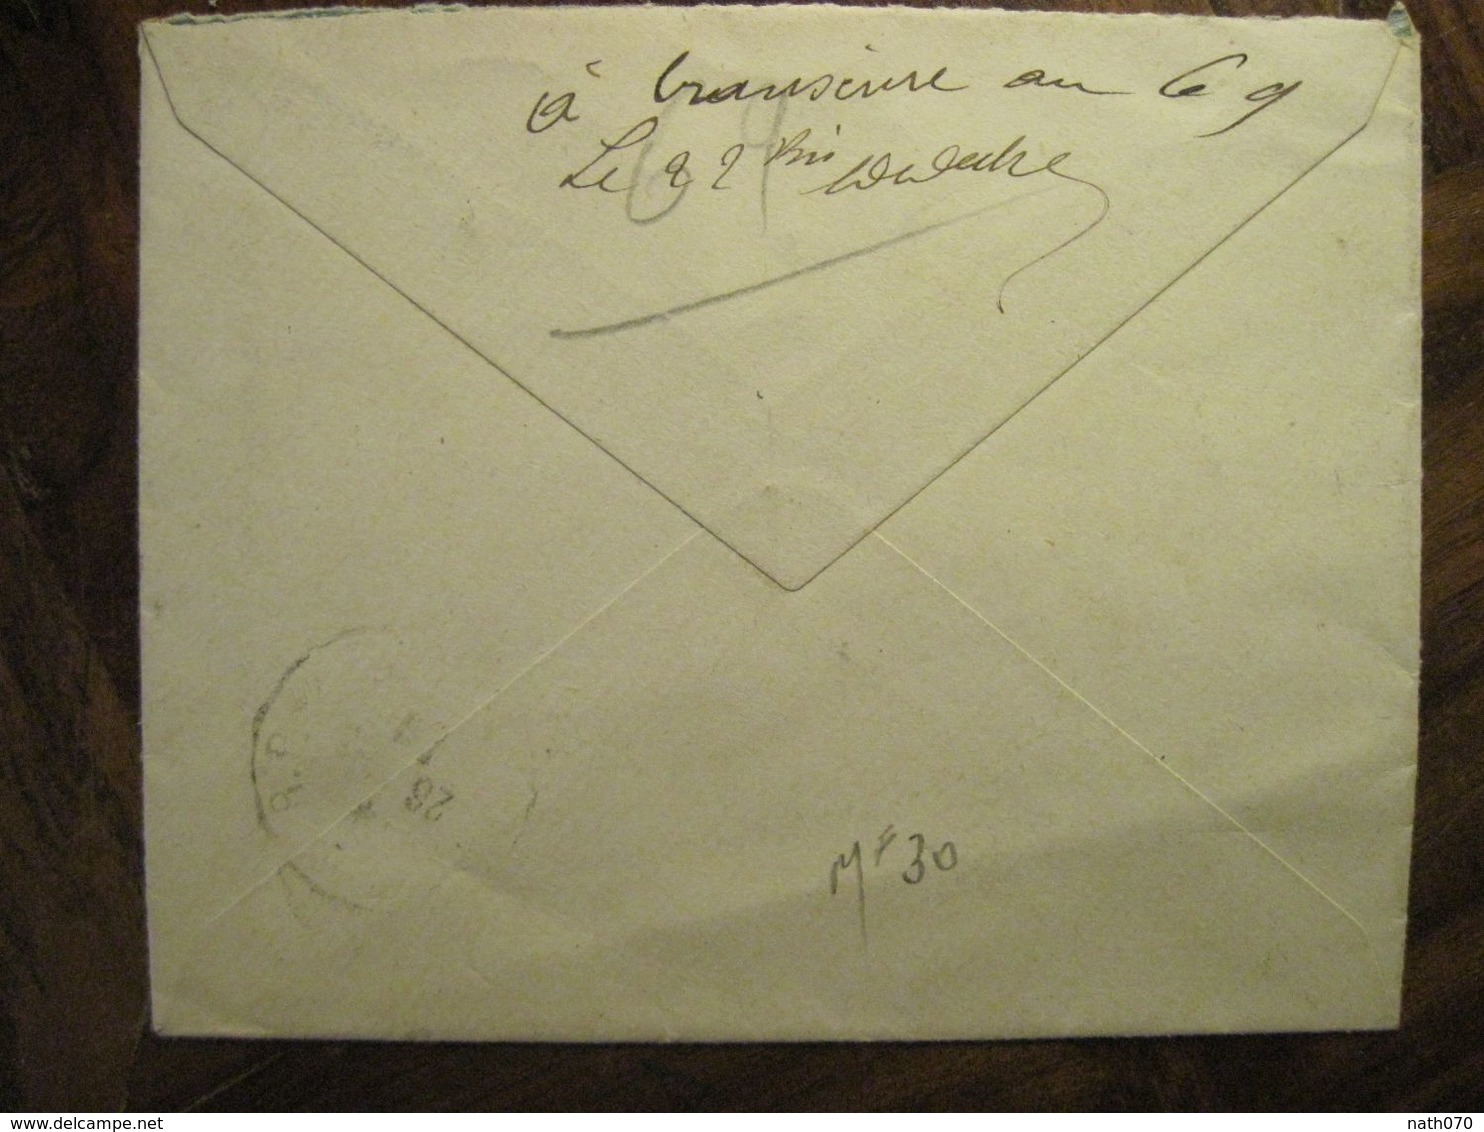 Cote D'Ivoire 1920 France Grand Bassam Lettre Enveloppe Cover Colonie Recommandé Reco AOF Taffin Lefort - Lettres & Documents